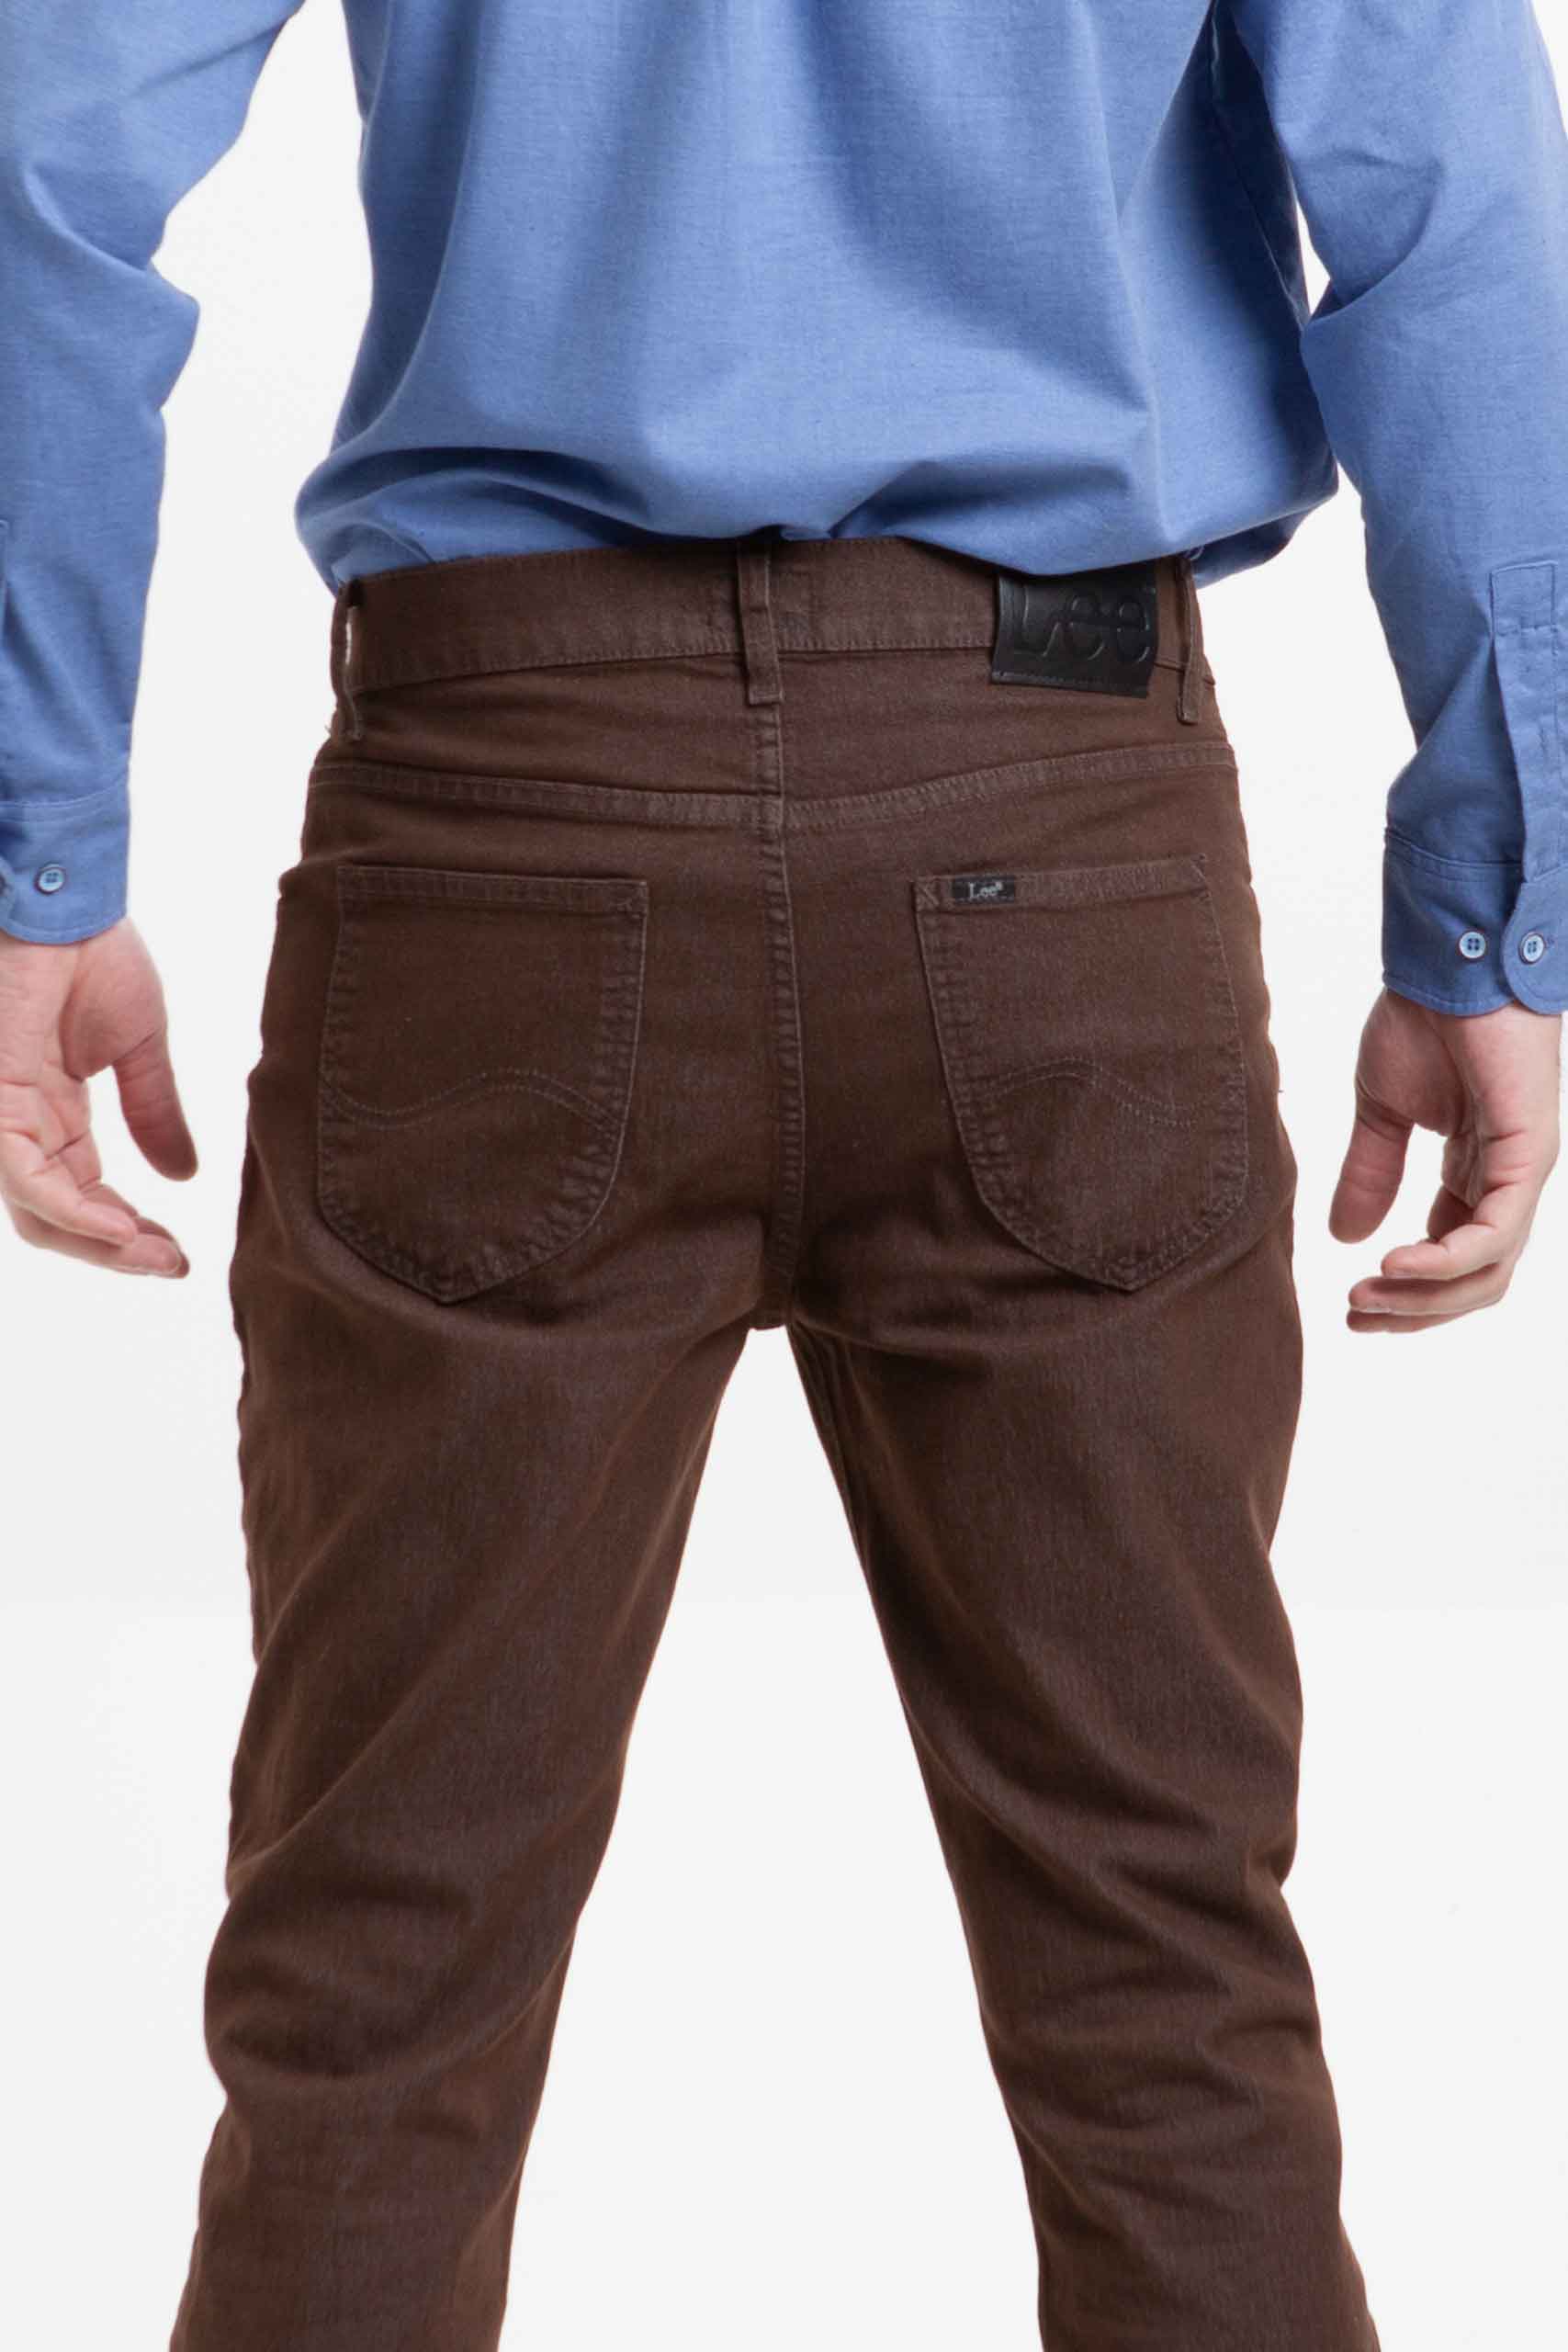 Vista posterior de jean color café de pierna recta de marca lee